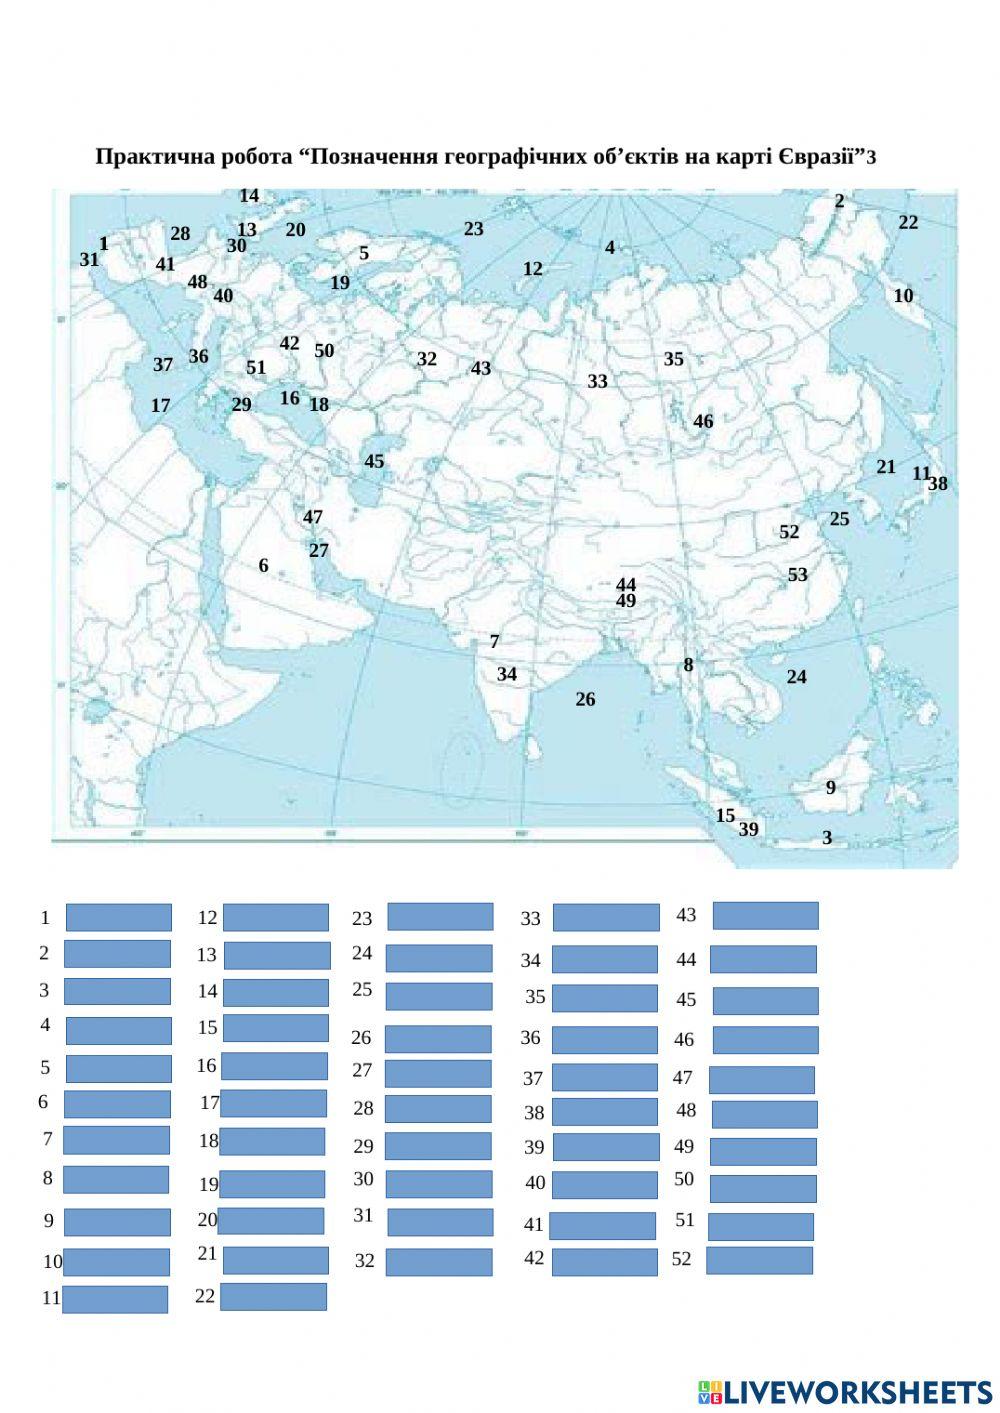 Практична робота“Позначення географічних об’єктів на карті Євразії”